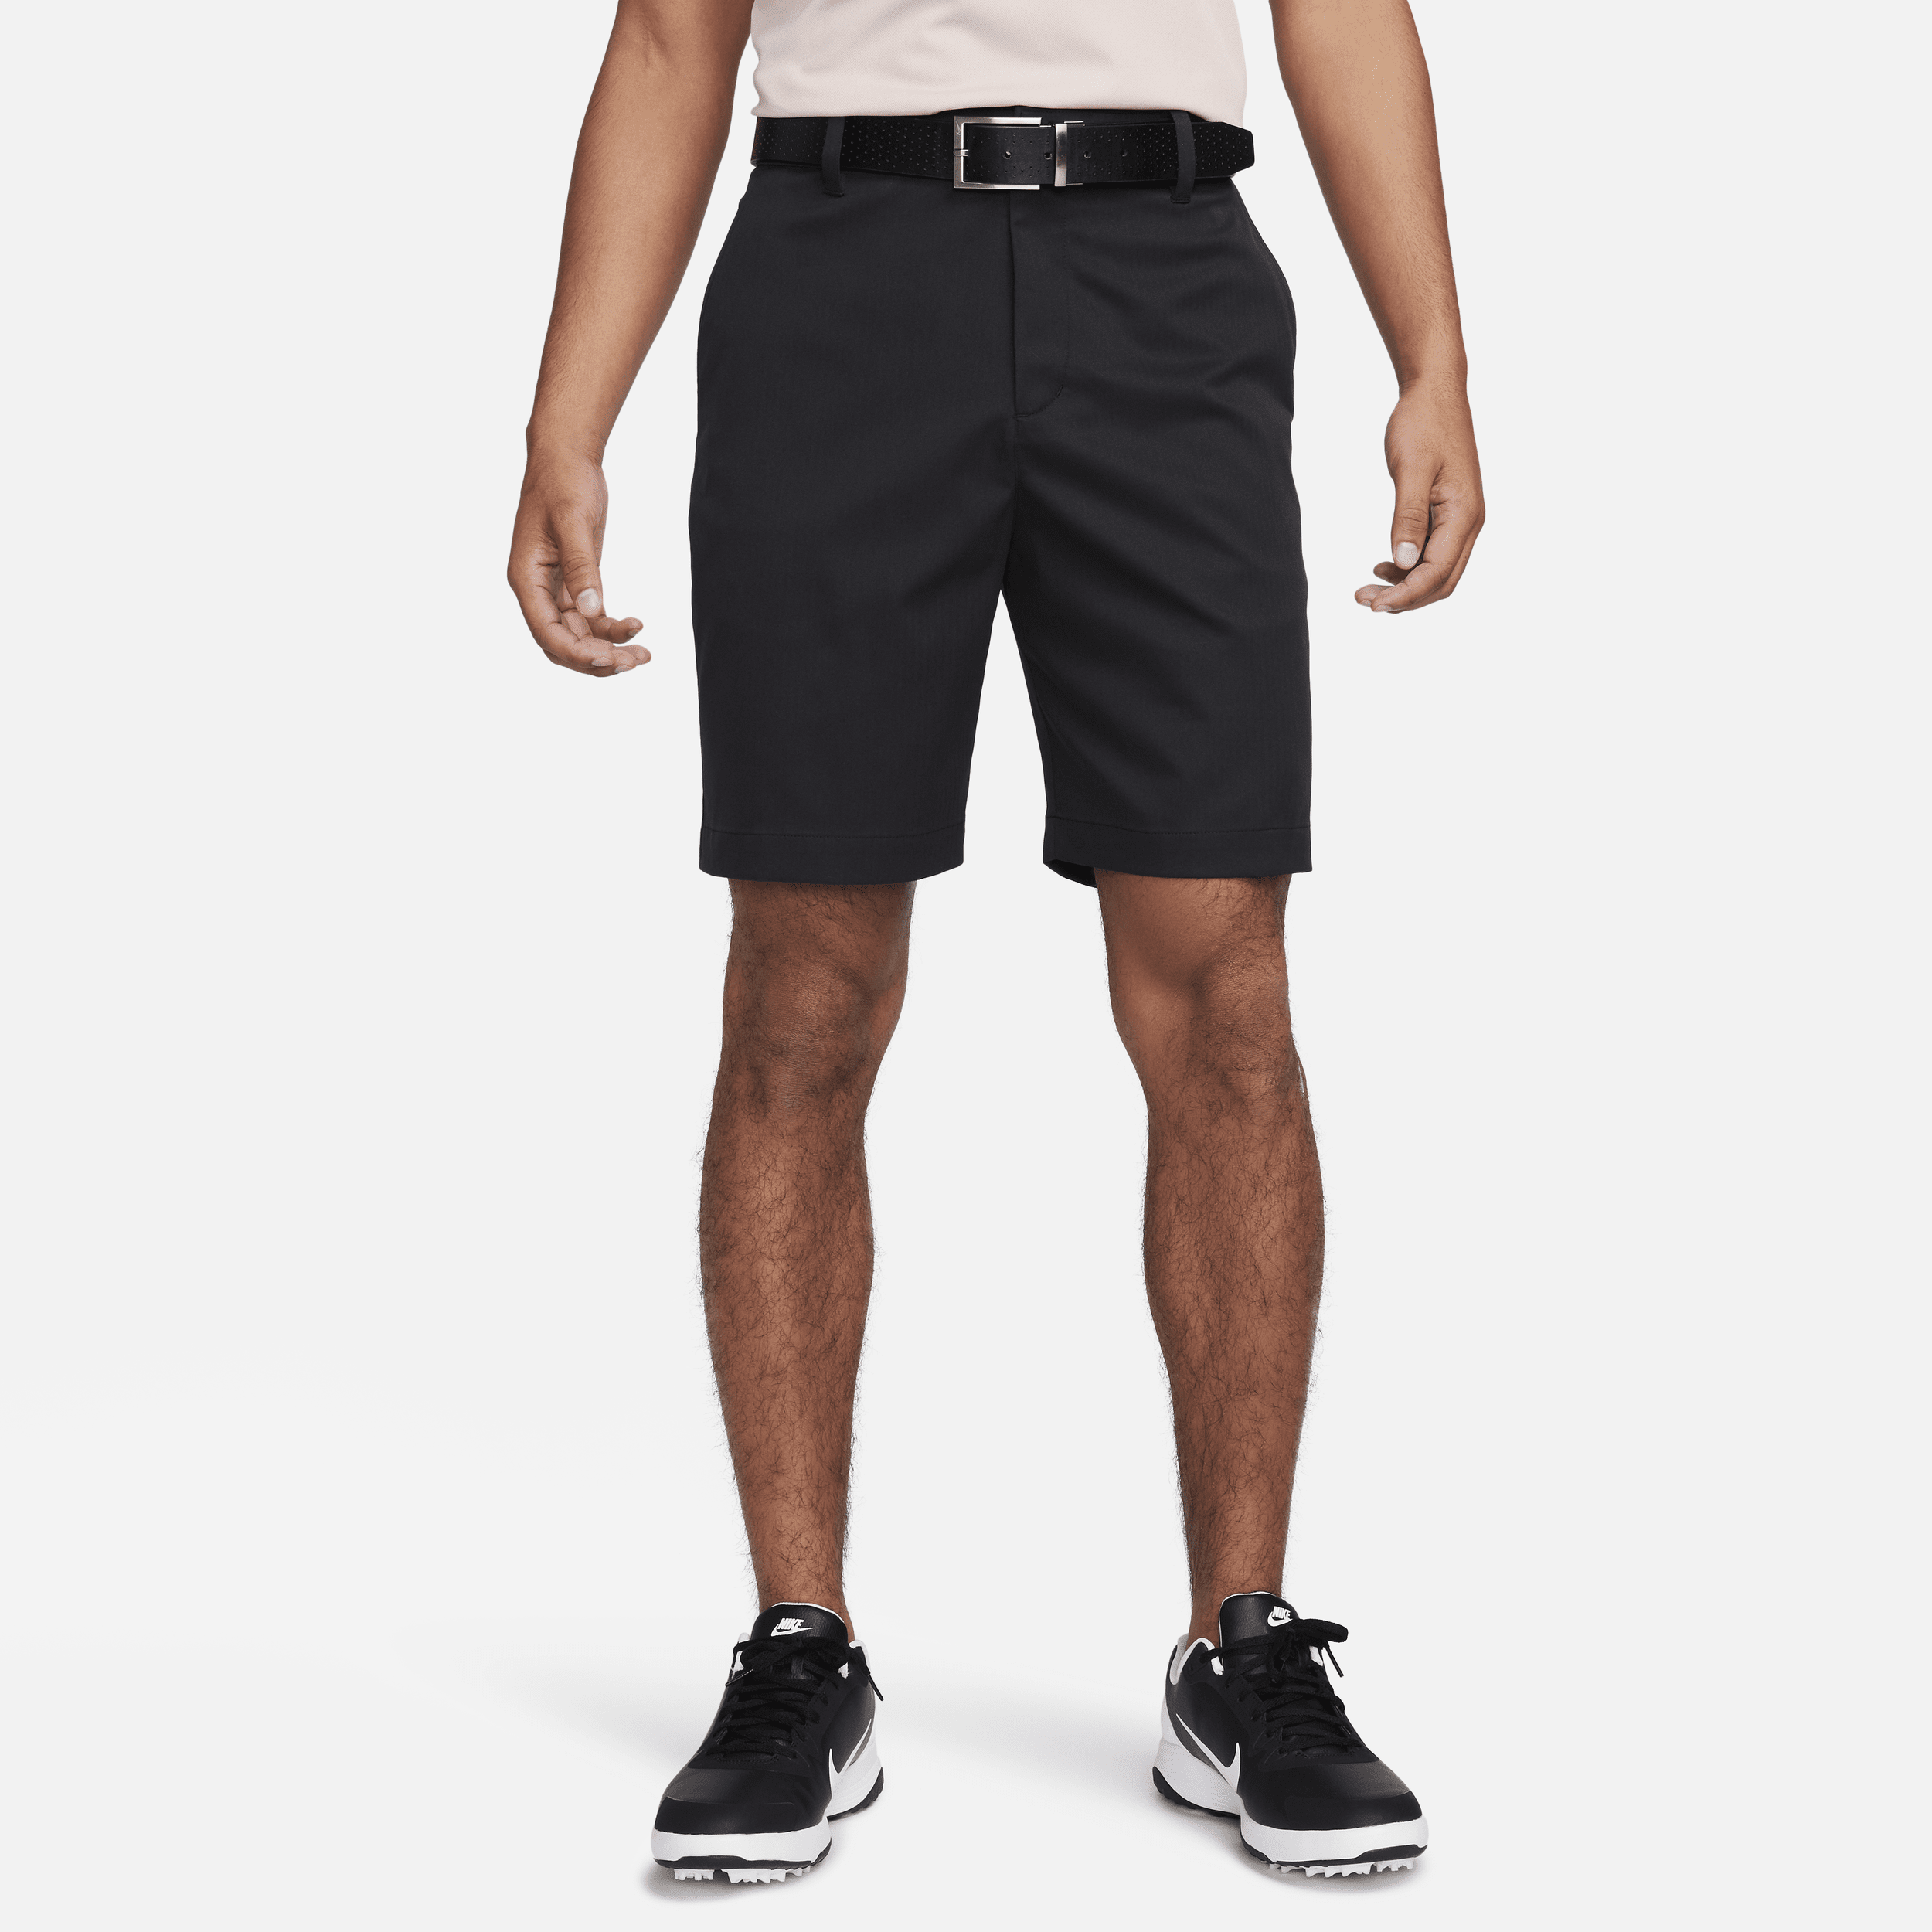 Nike Tour Pantalón corto chino de golf de 20 cm - Hombre - Negro